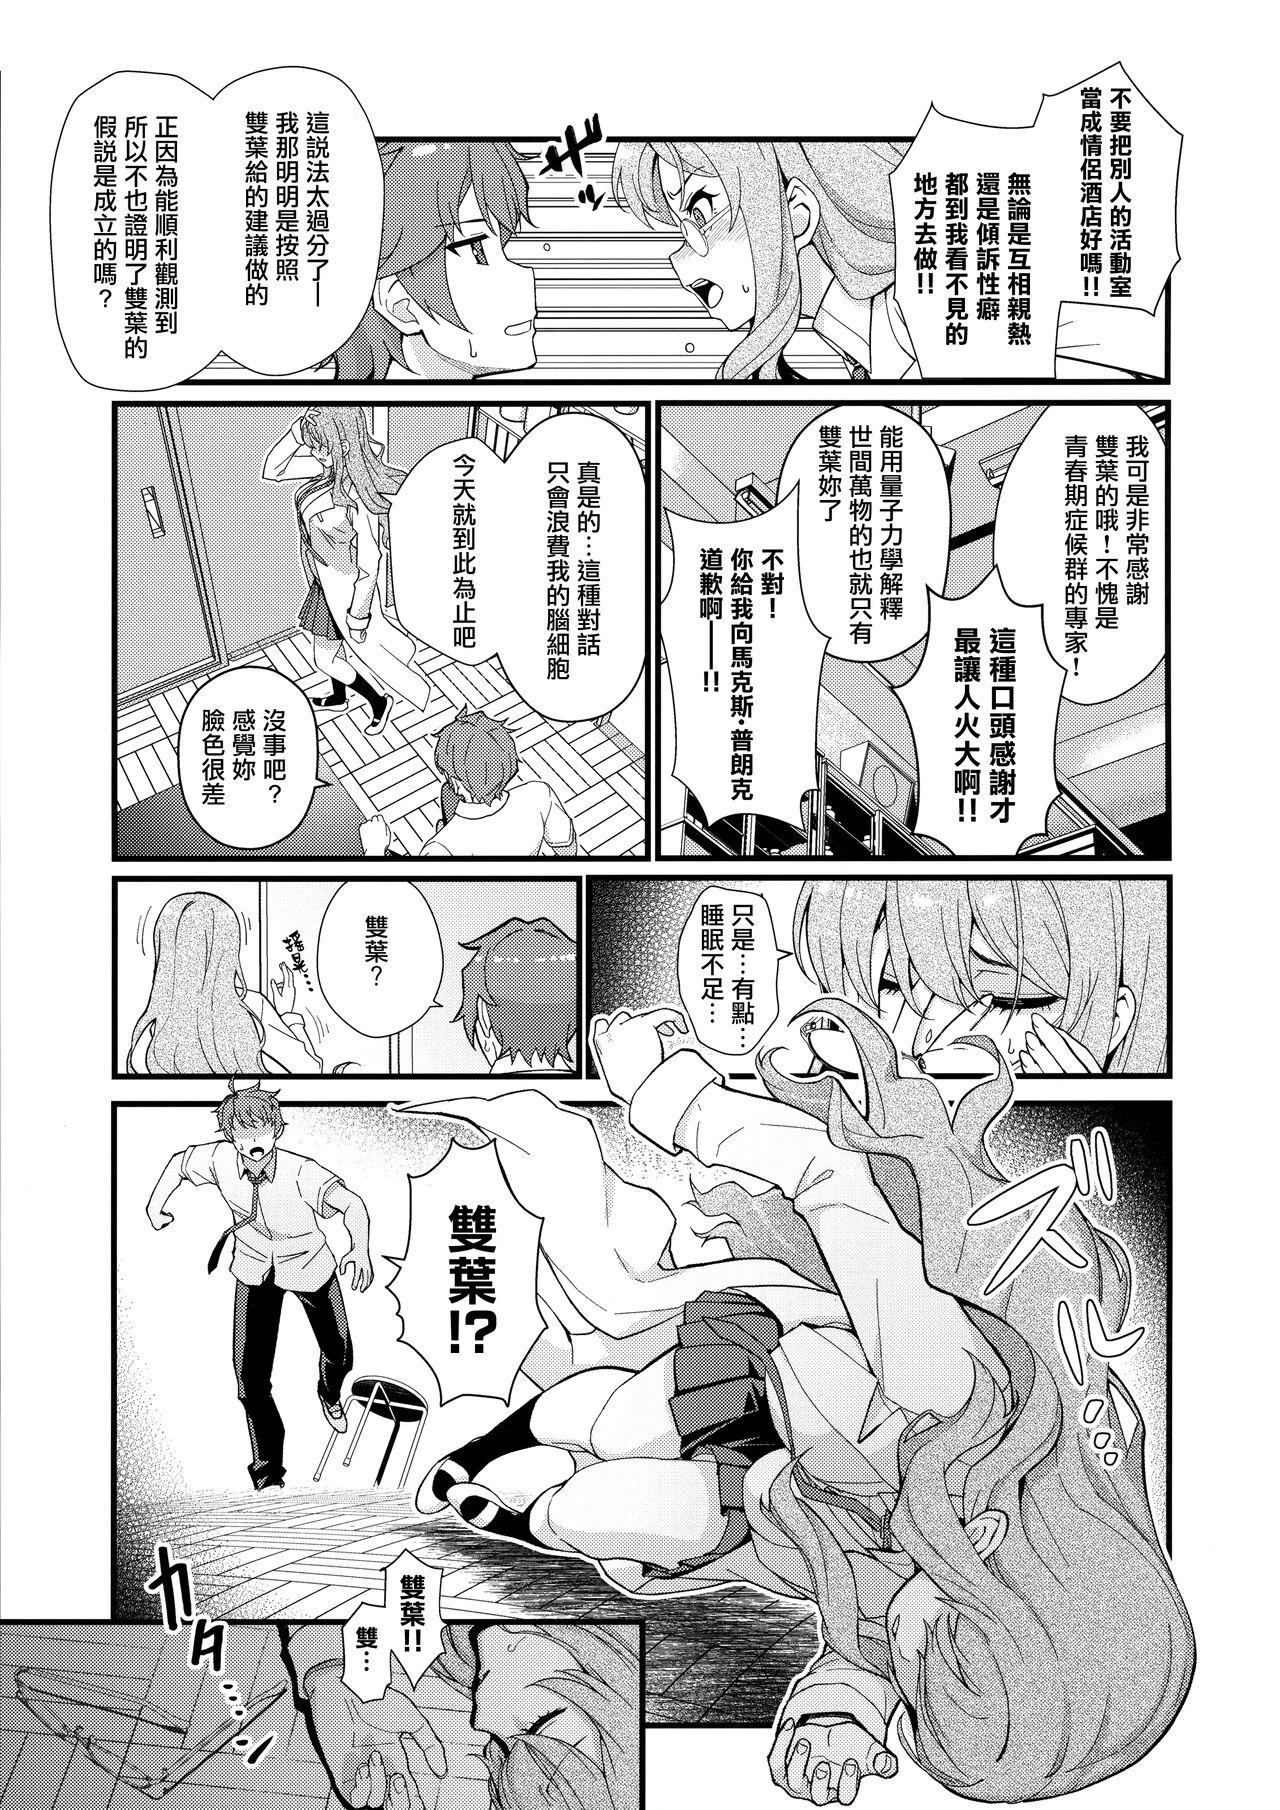 Jacking MULTI REALITY - Seishun buta yarou wa bunny girl senpai no yume o minai Stepbro - Page 5